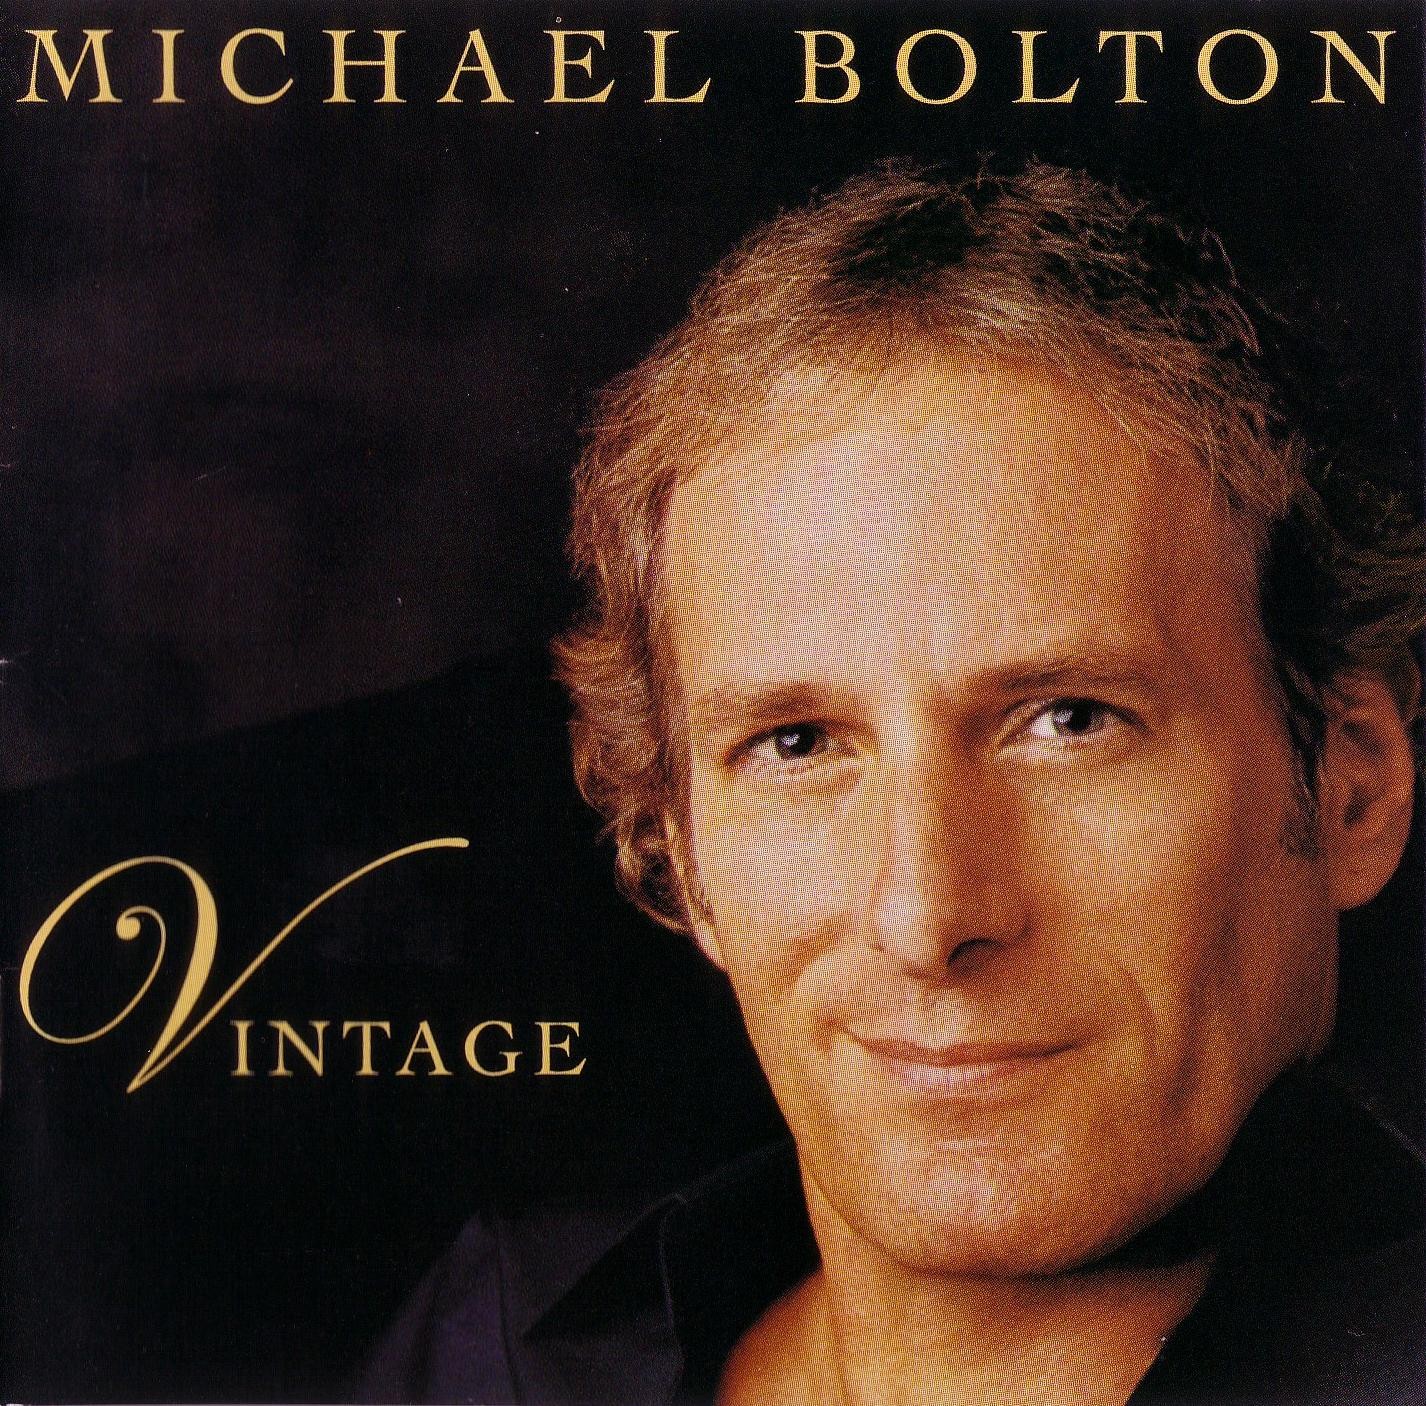 Michael Bolton Album Cover.